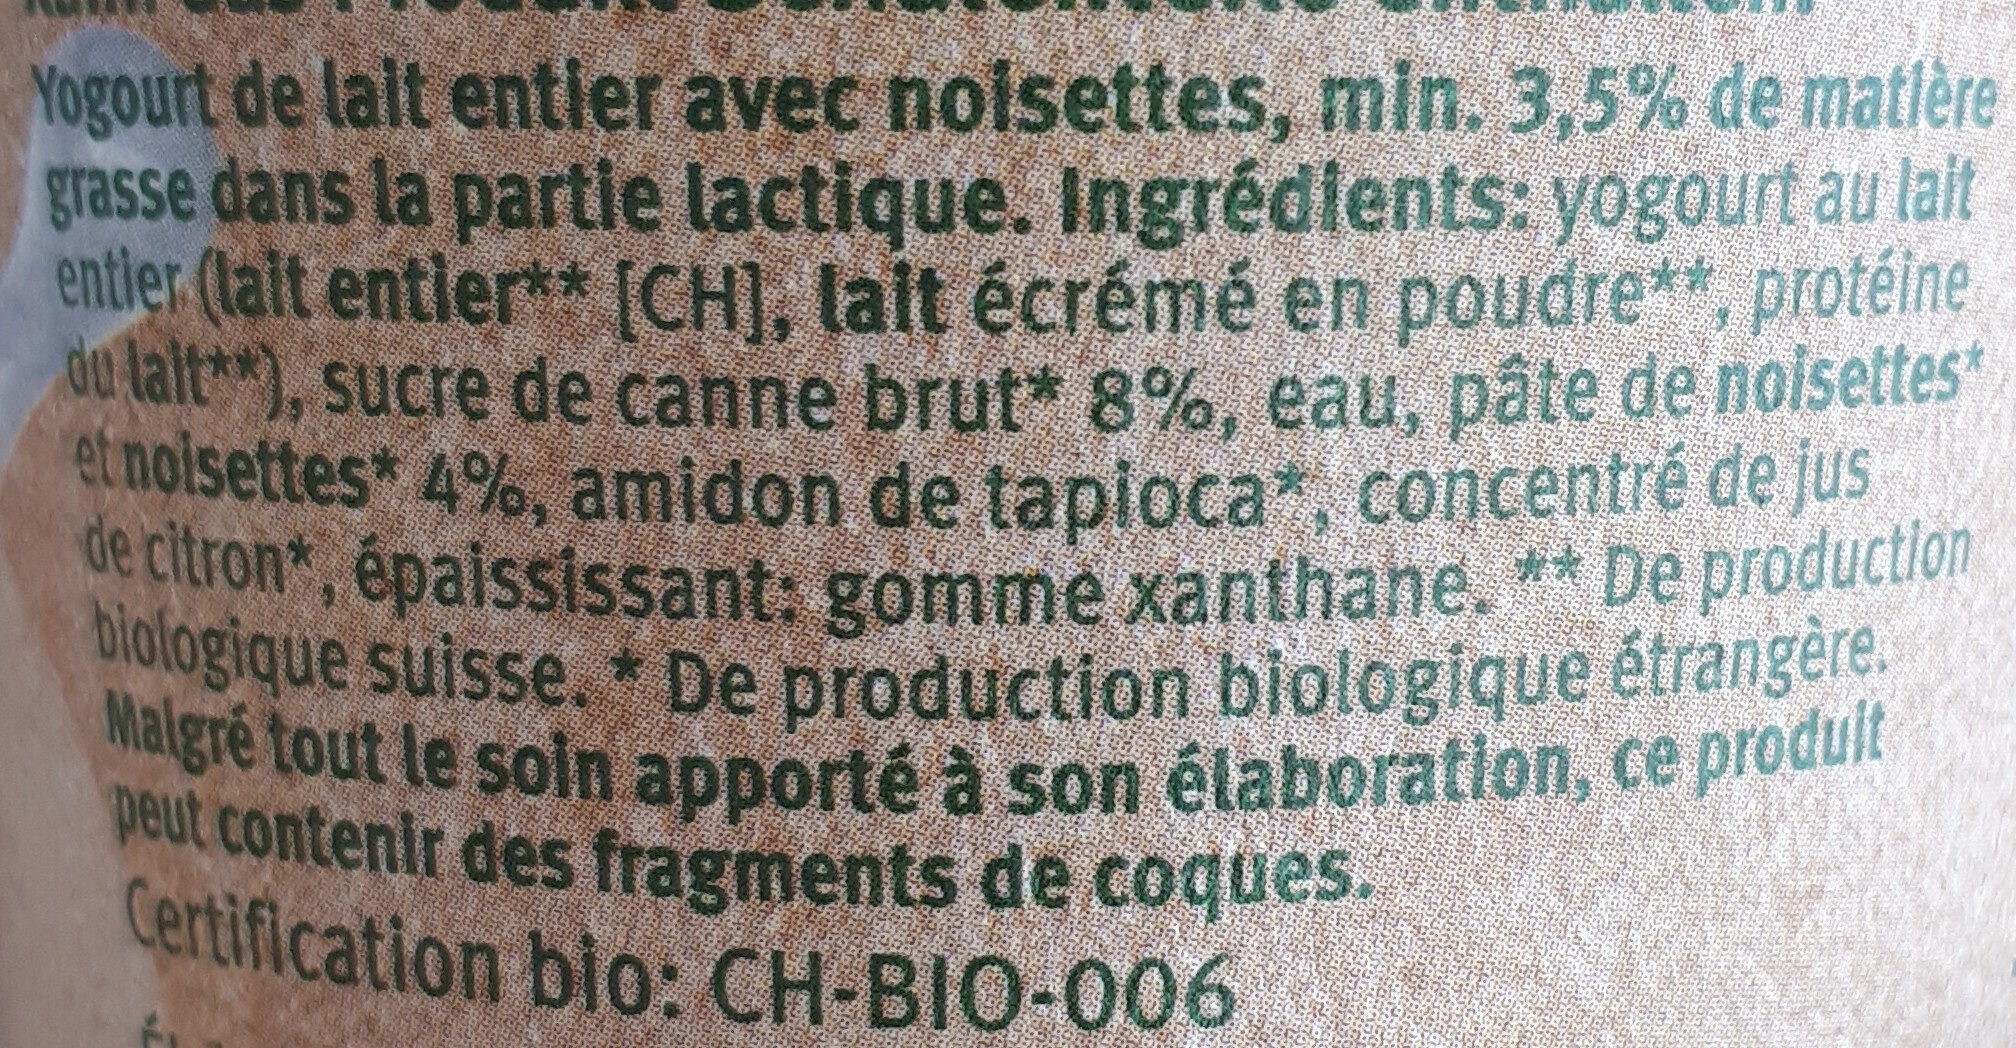 Yaourt noisettes bio - Ingredientes - fr